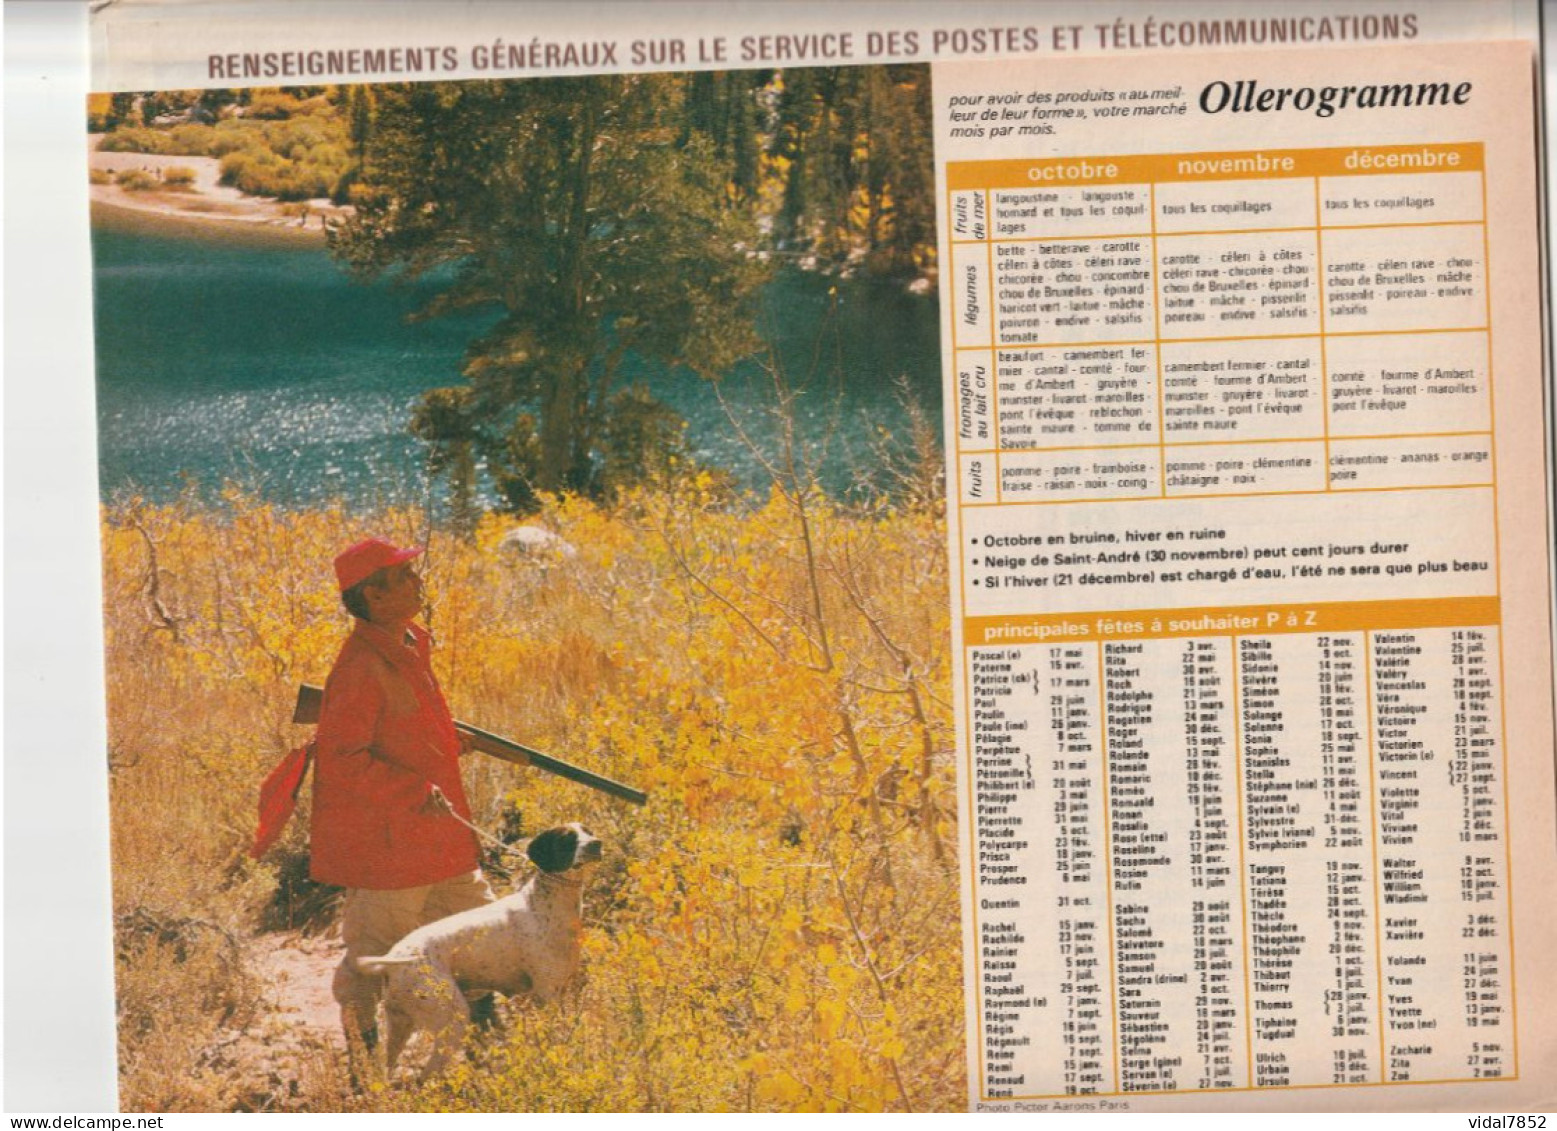 Calendrier-Almanach Des P.T.T 1986 Gouter Dans L'herbe-jeune Mouton-OLLER Département AIN-01-Référence 434 - Formato Grande : 1981-90